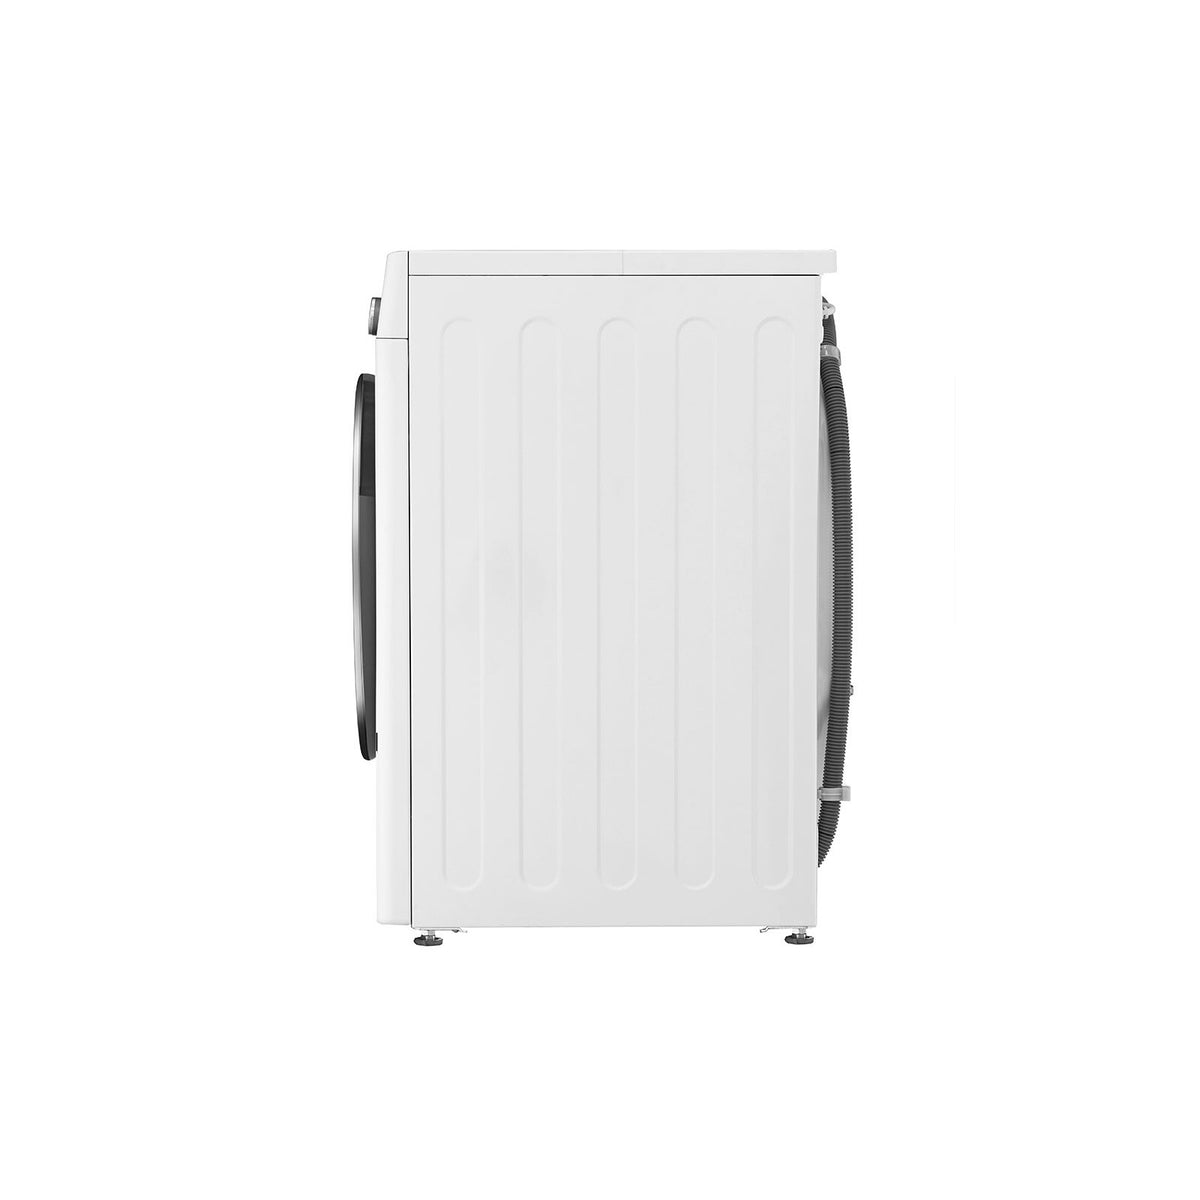 Pračka s předním plněním LG F4WV710P1, A+++, 10,5kg